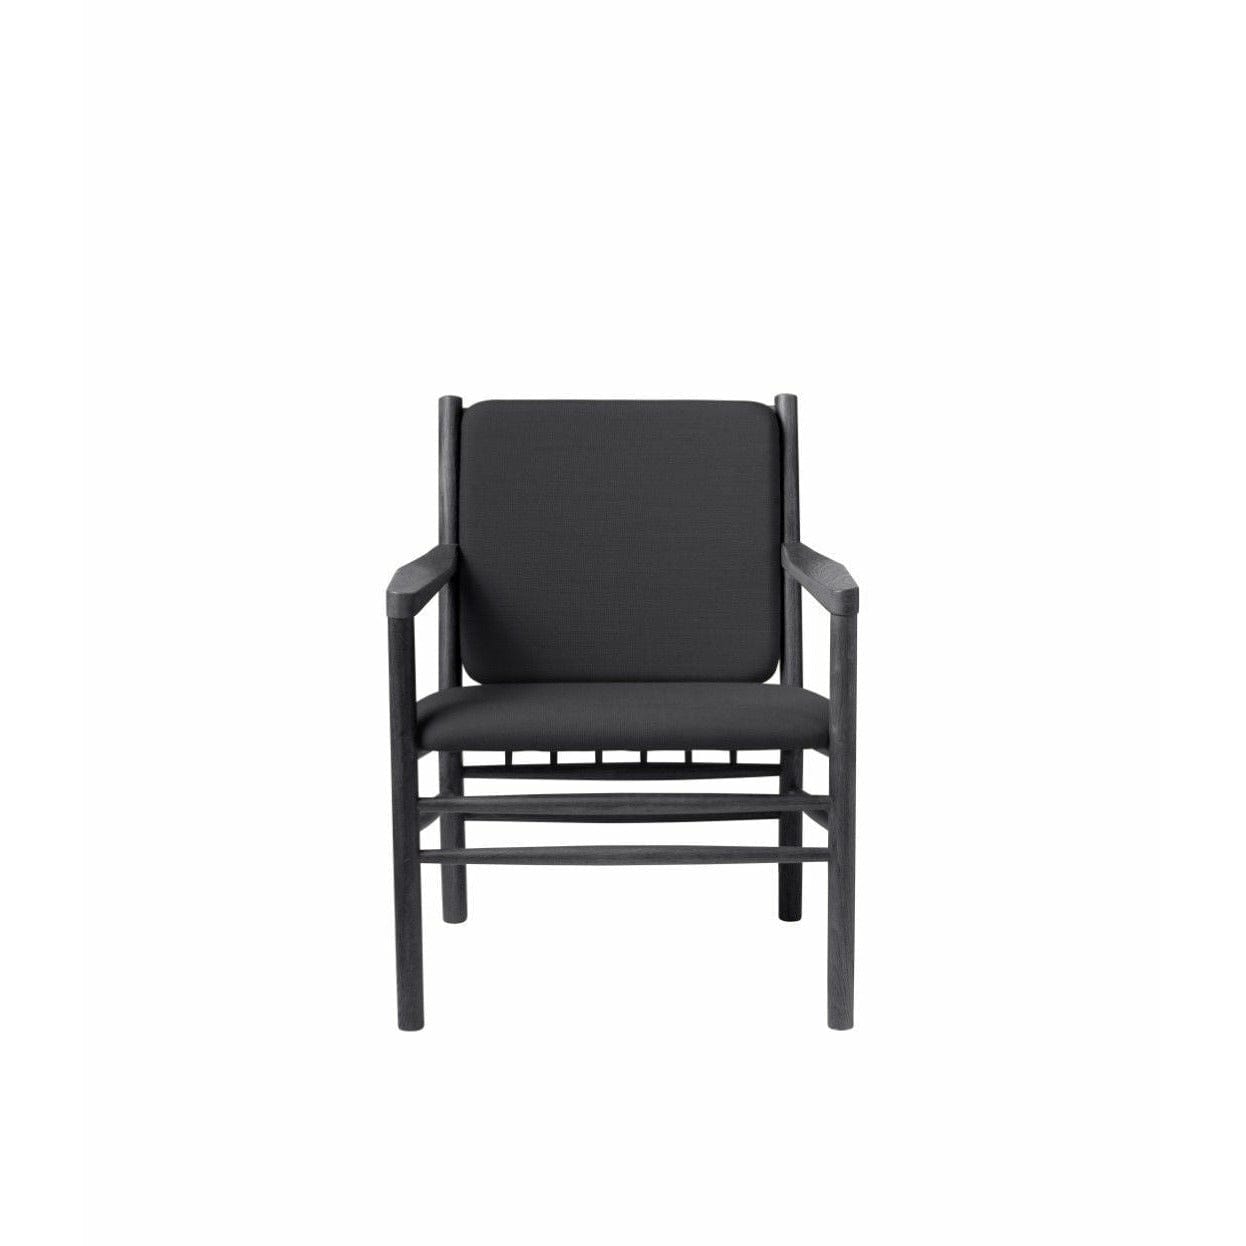 Fdb Møbler J147 Armchair, Black/Dark Grey